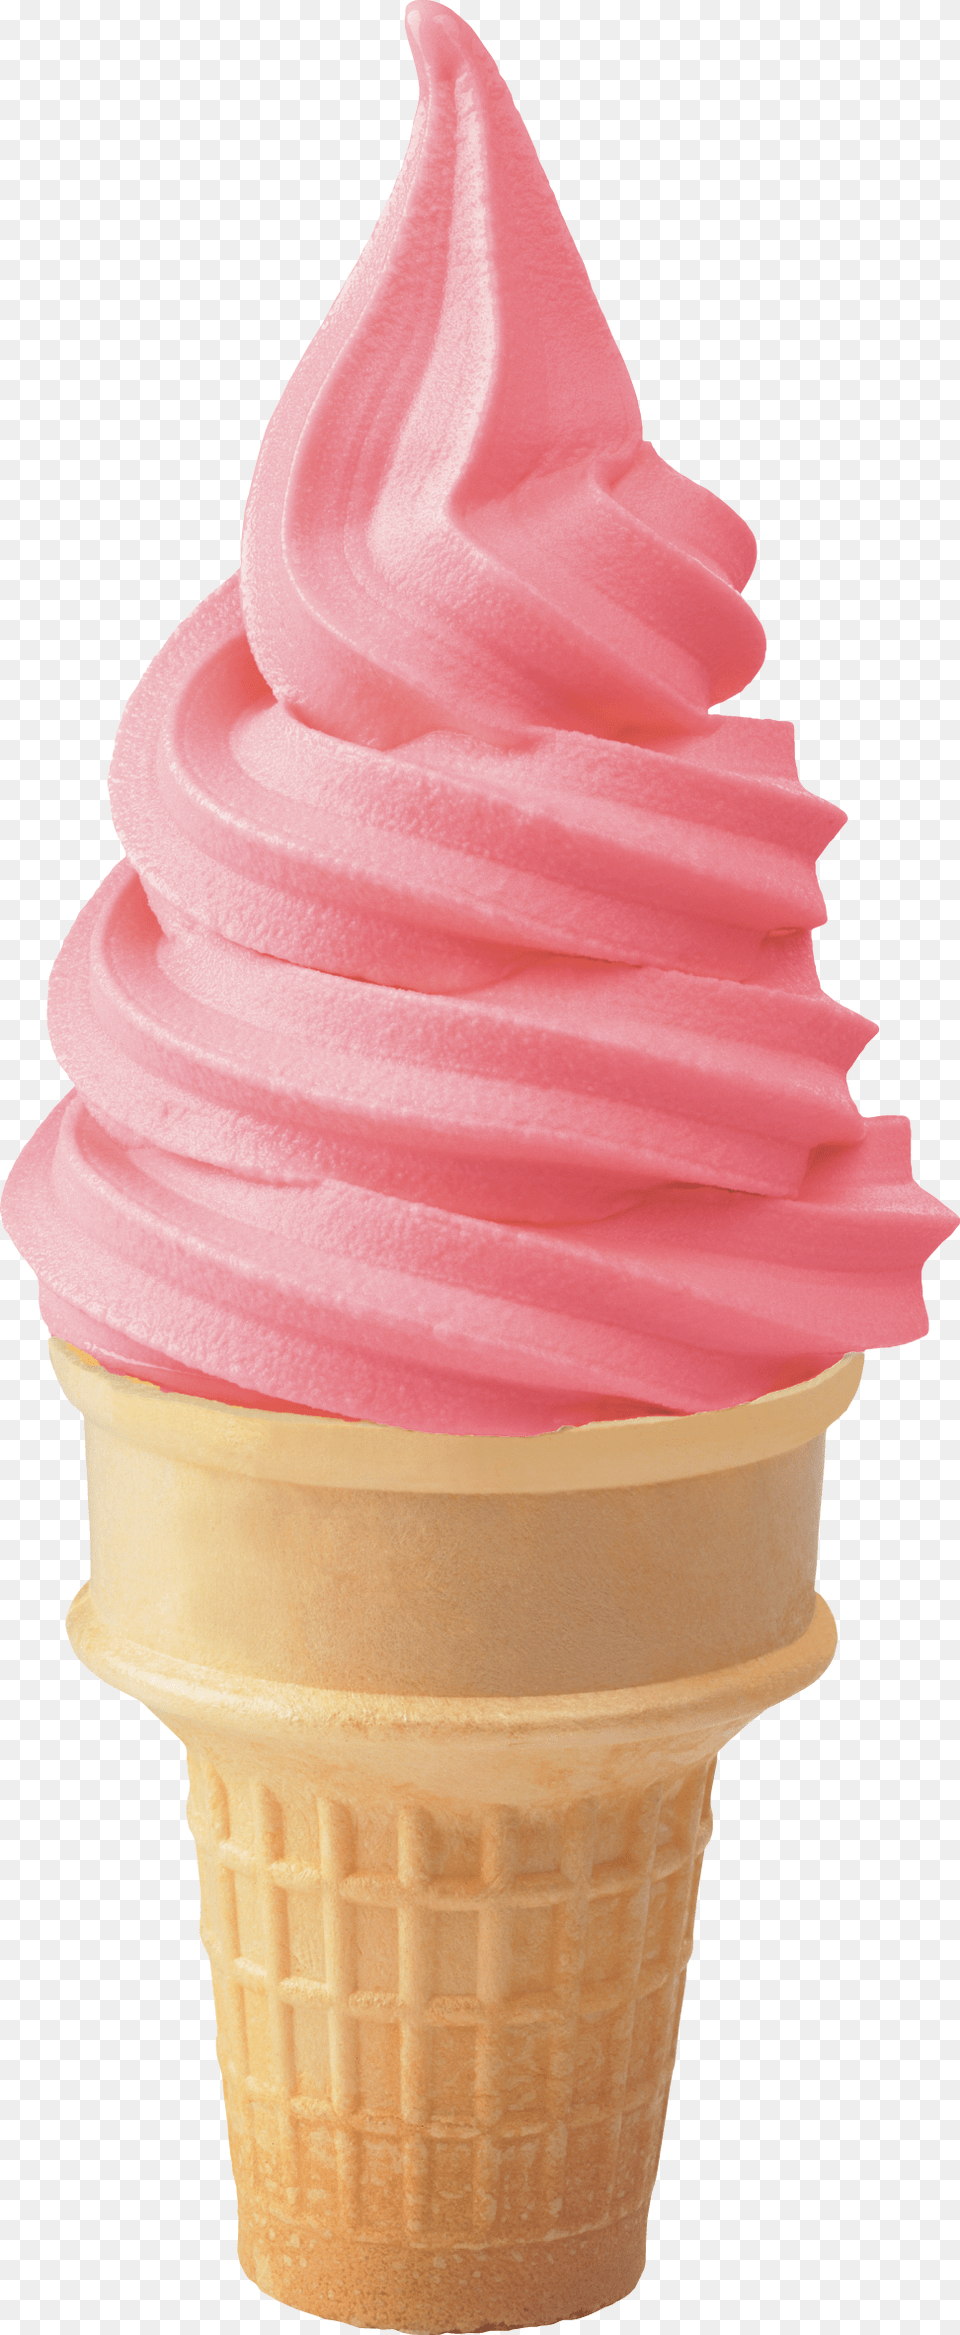 Strawberry Cone Soft Strawberry Ice Cream, Dessert, Food, Ice Cream, Soft Serve Ice Cream Free Png Download